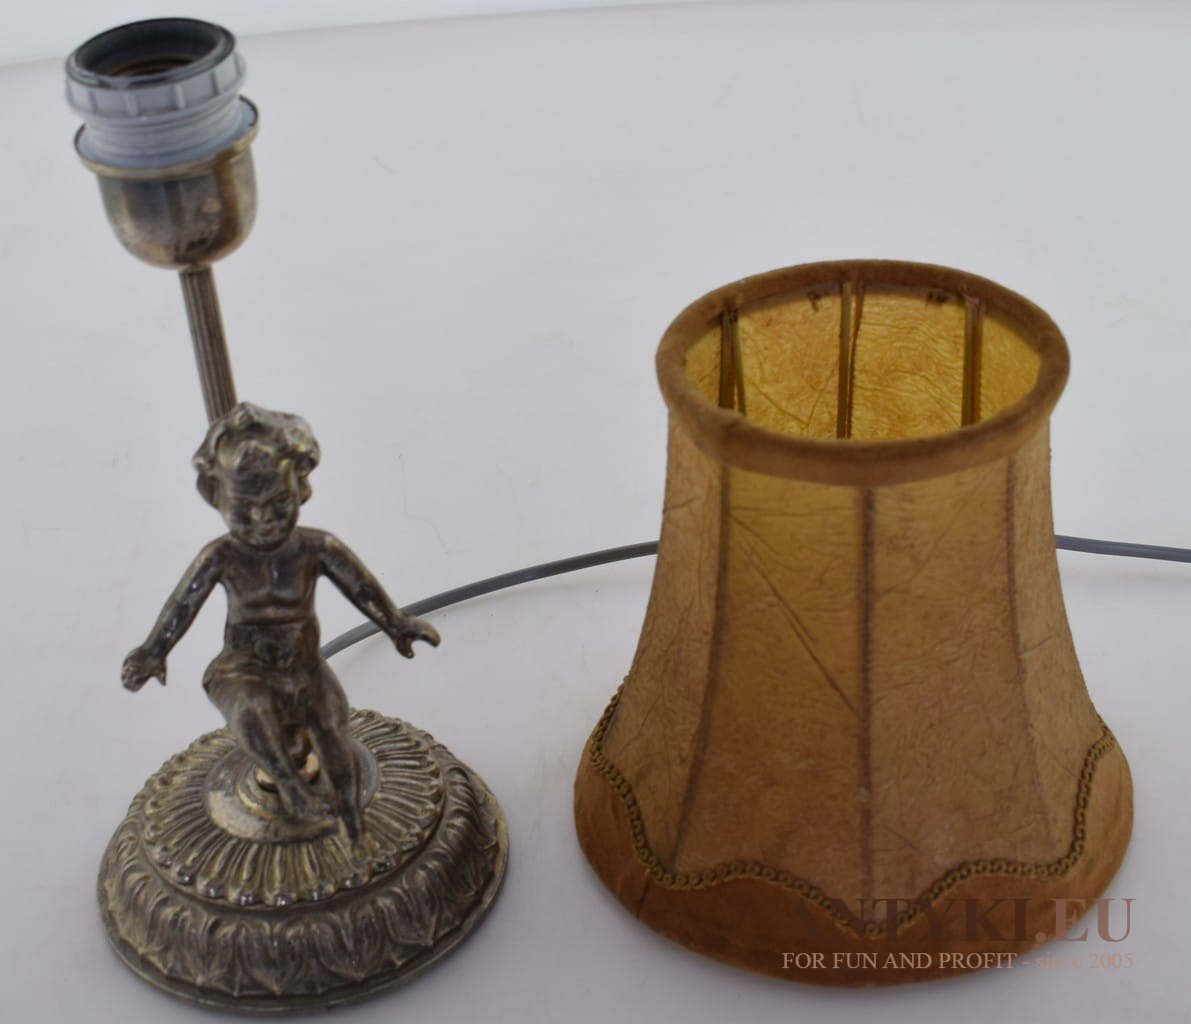 Babicna srebrna lampa z abażurem na stolik. Oświetlenie z cherubinem.